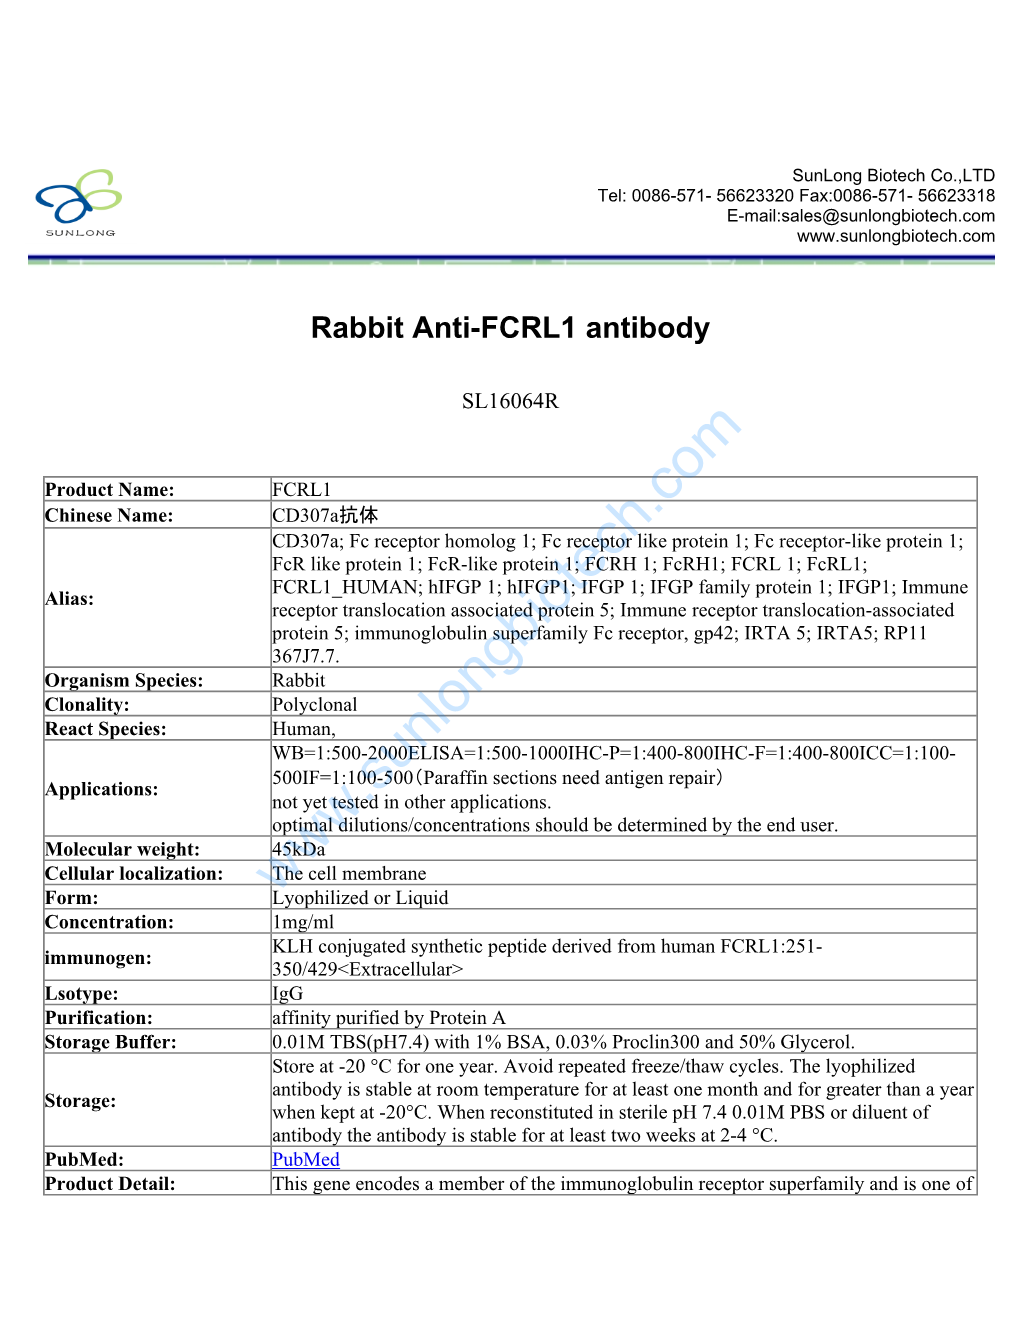 Rabbit Anti-FCRL1 Antibody-SL16064R